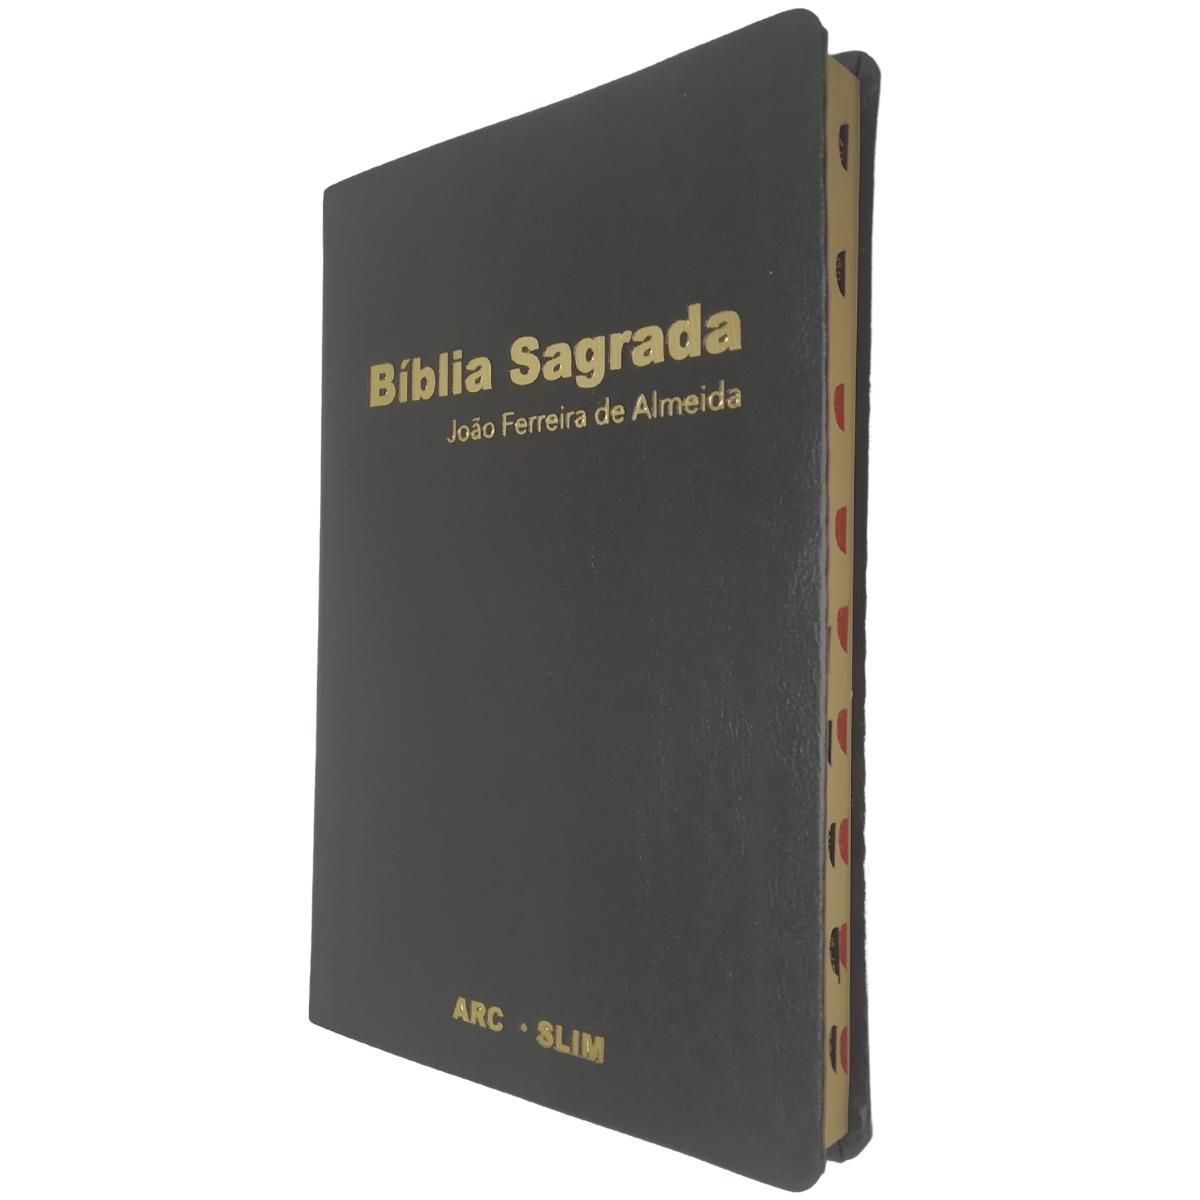 Bilíngue/Trilíngue - Gospel Commerce Distribuidora De Bíblias